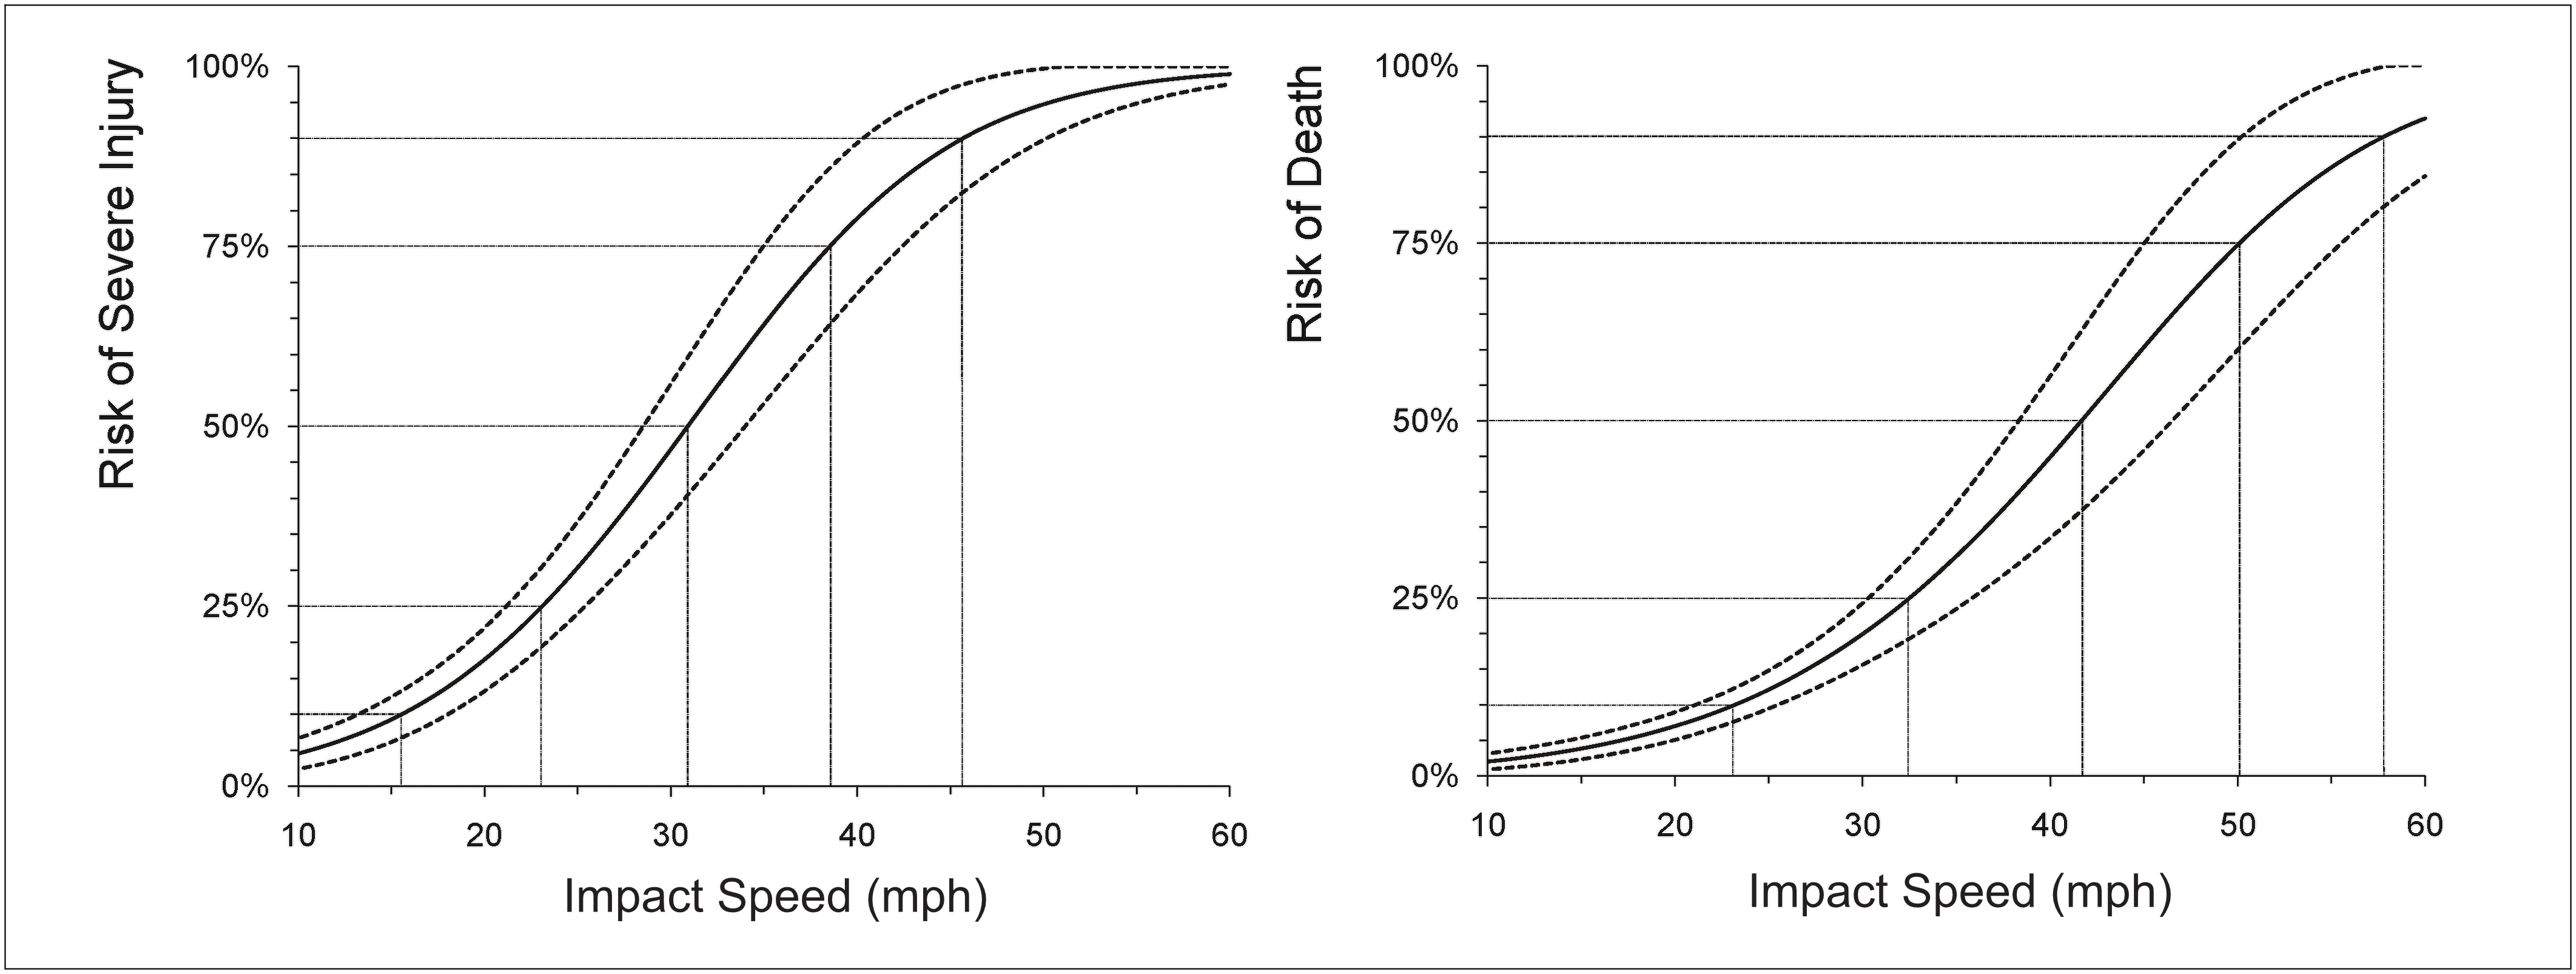 Pedestrian risk by vehicle speed